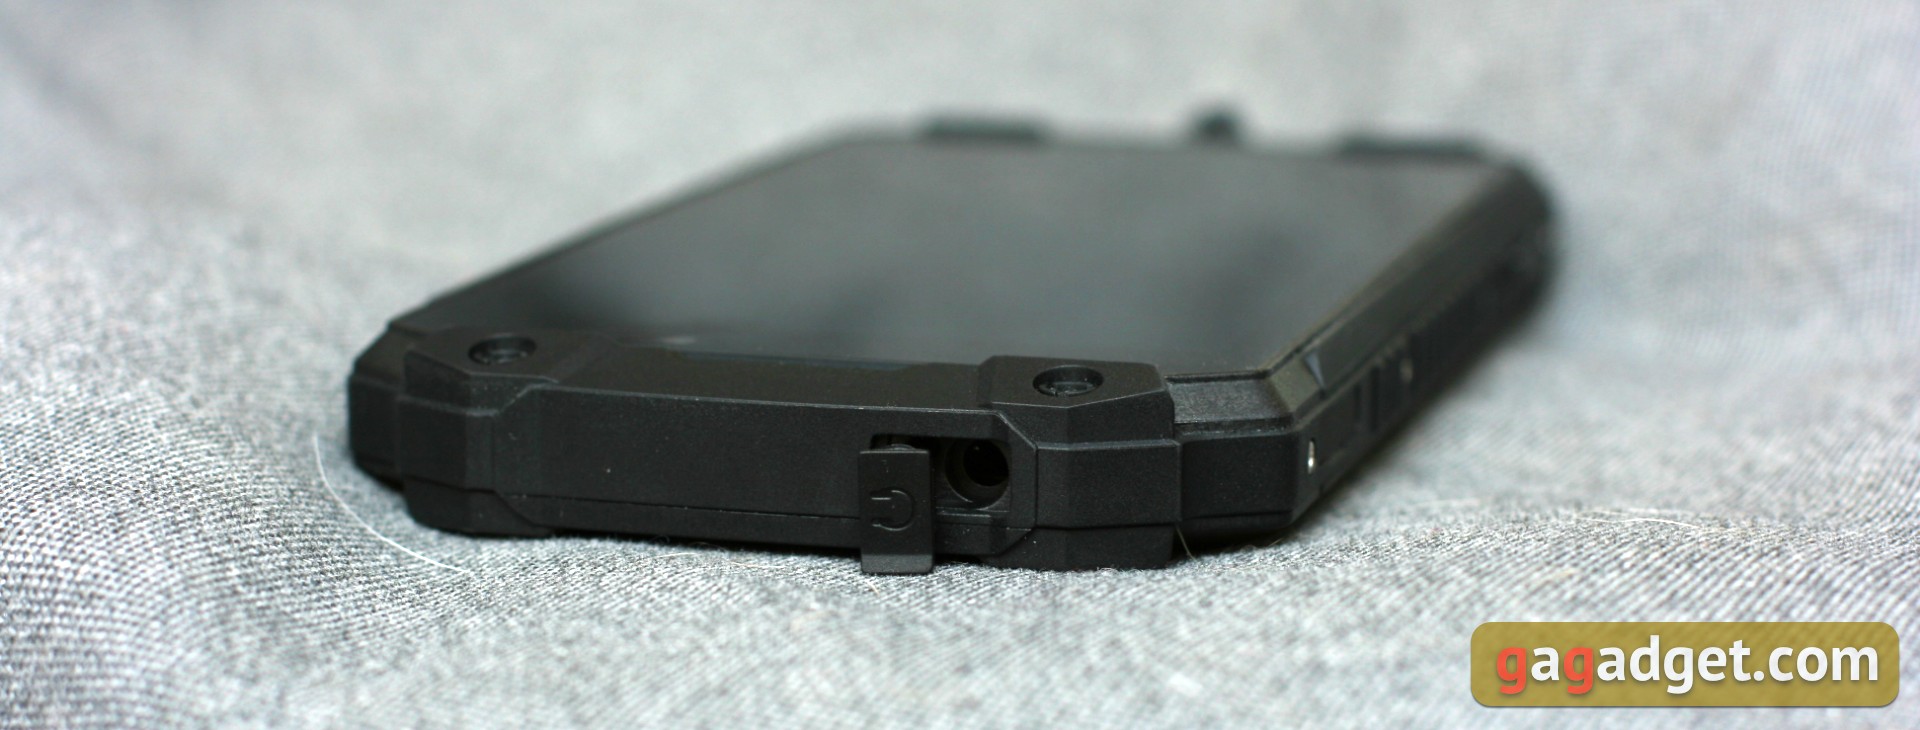 Огляд Sigma Mobile X-treme PQ39 MAX: сучасний захищений батарейкофон-9